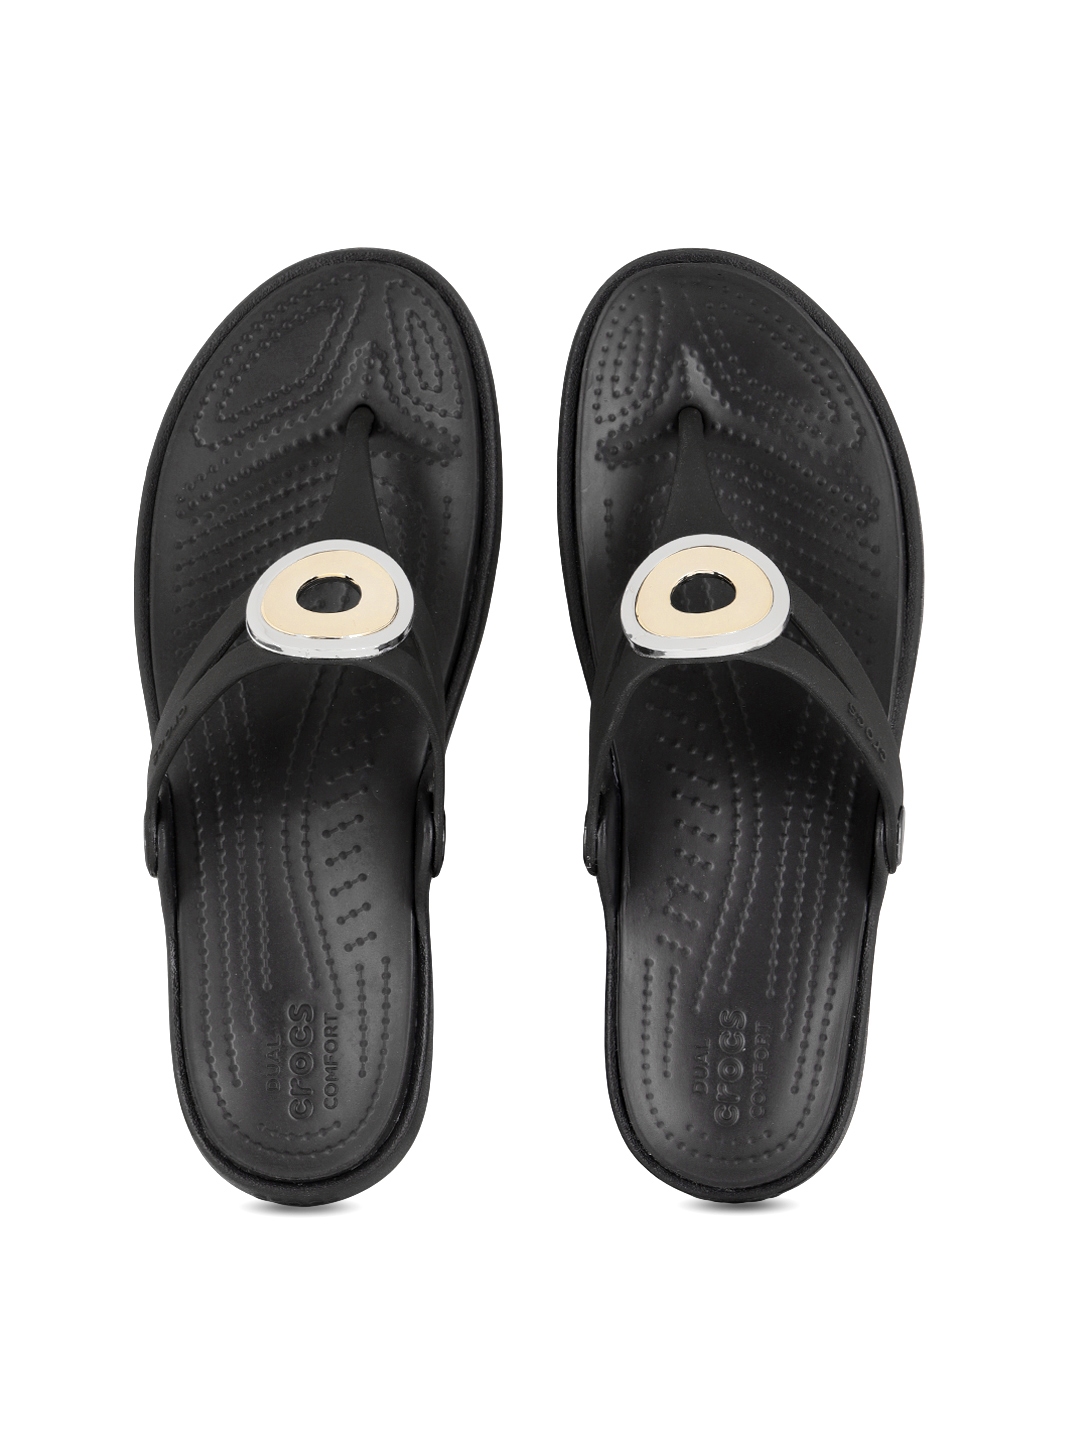 crocs black solid open toe flats